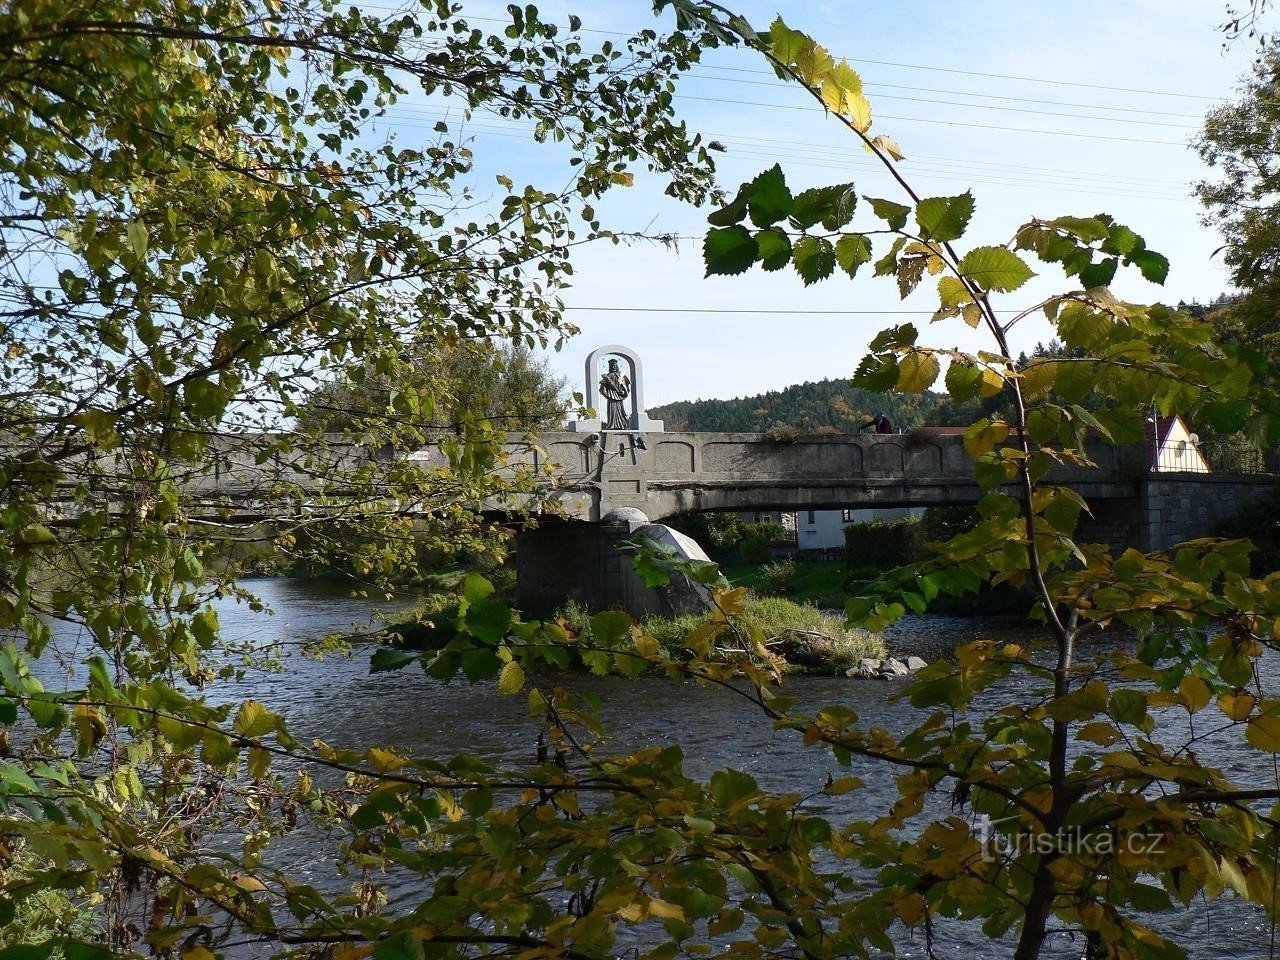 Kap, zicht op de brug en standbeeld vanaf de linkeroever